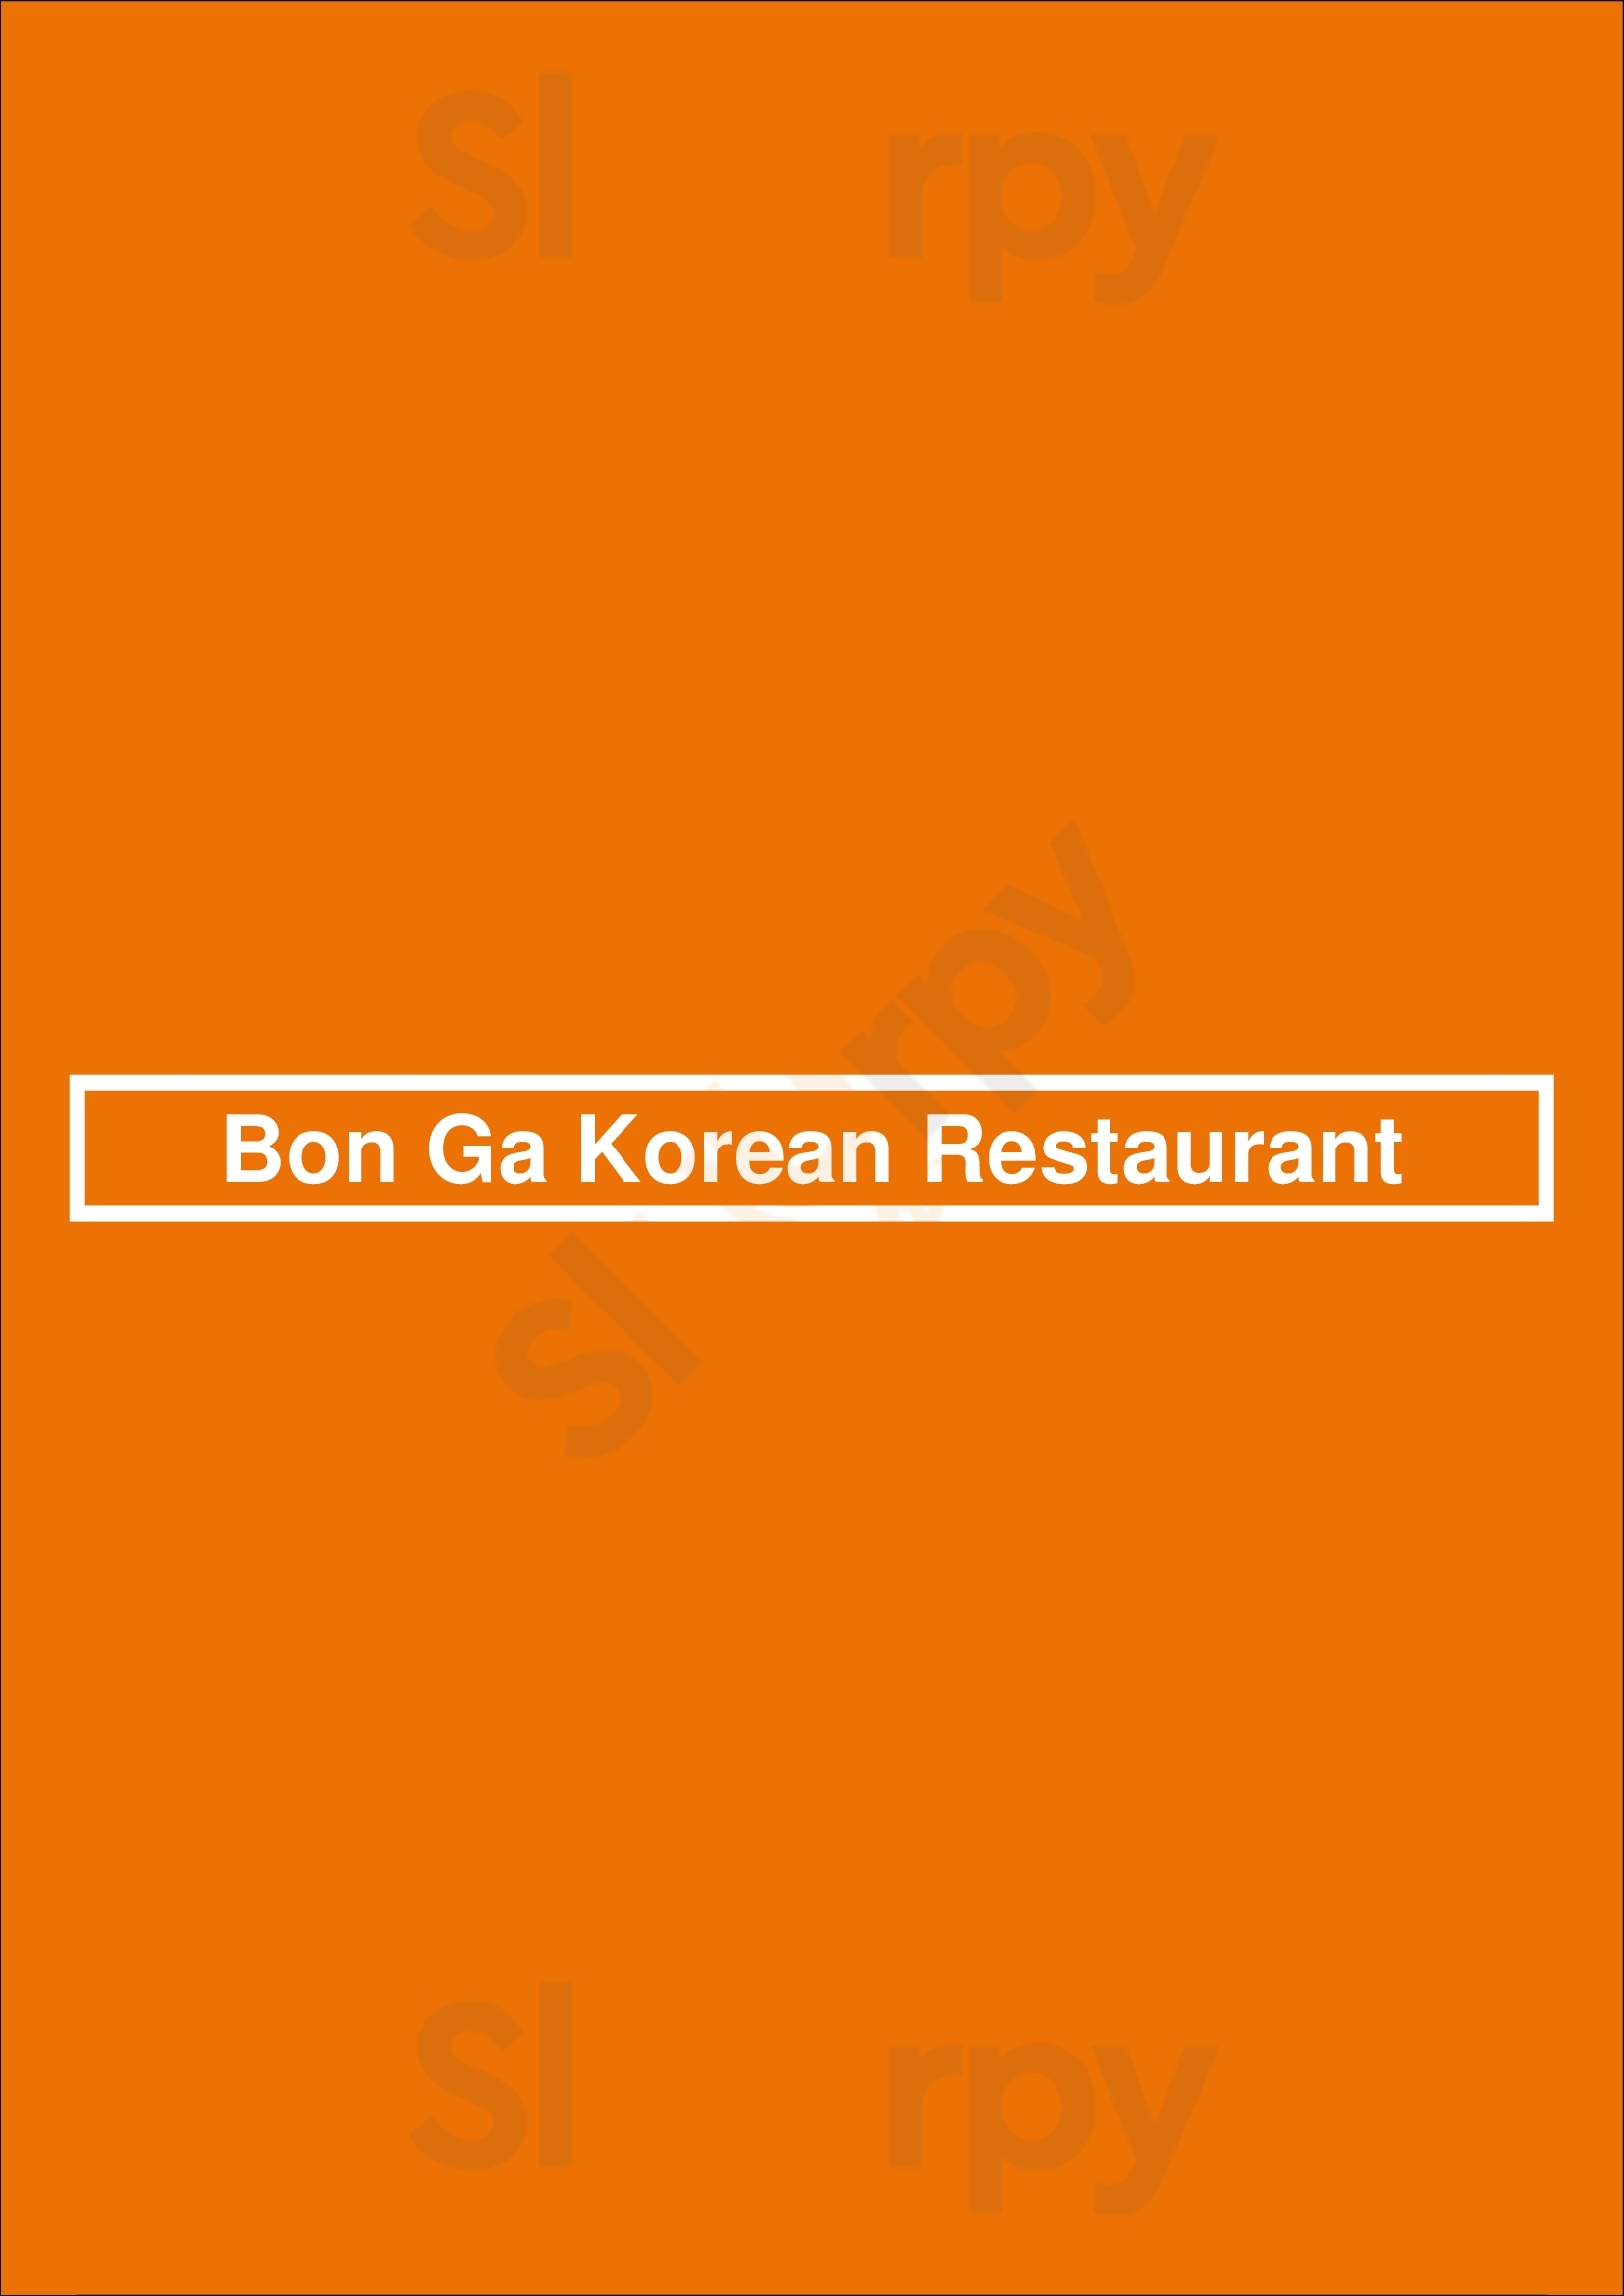 Bon Ga Korean Restaurant Surrey Menu - 1